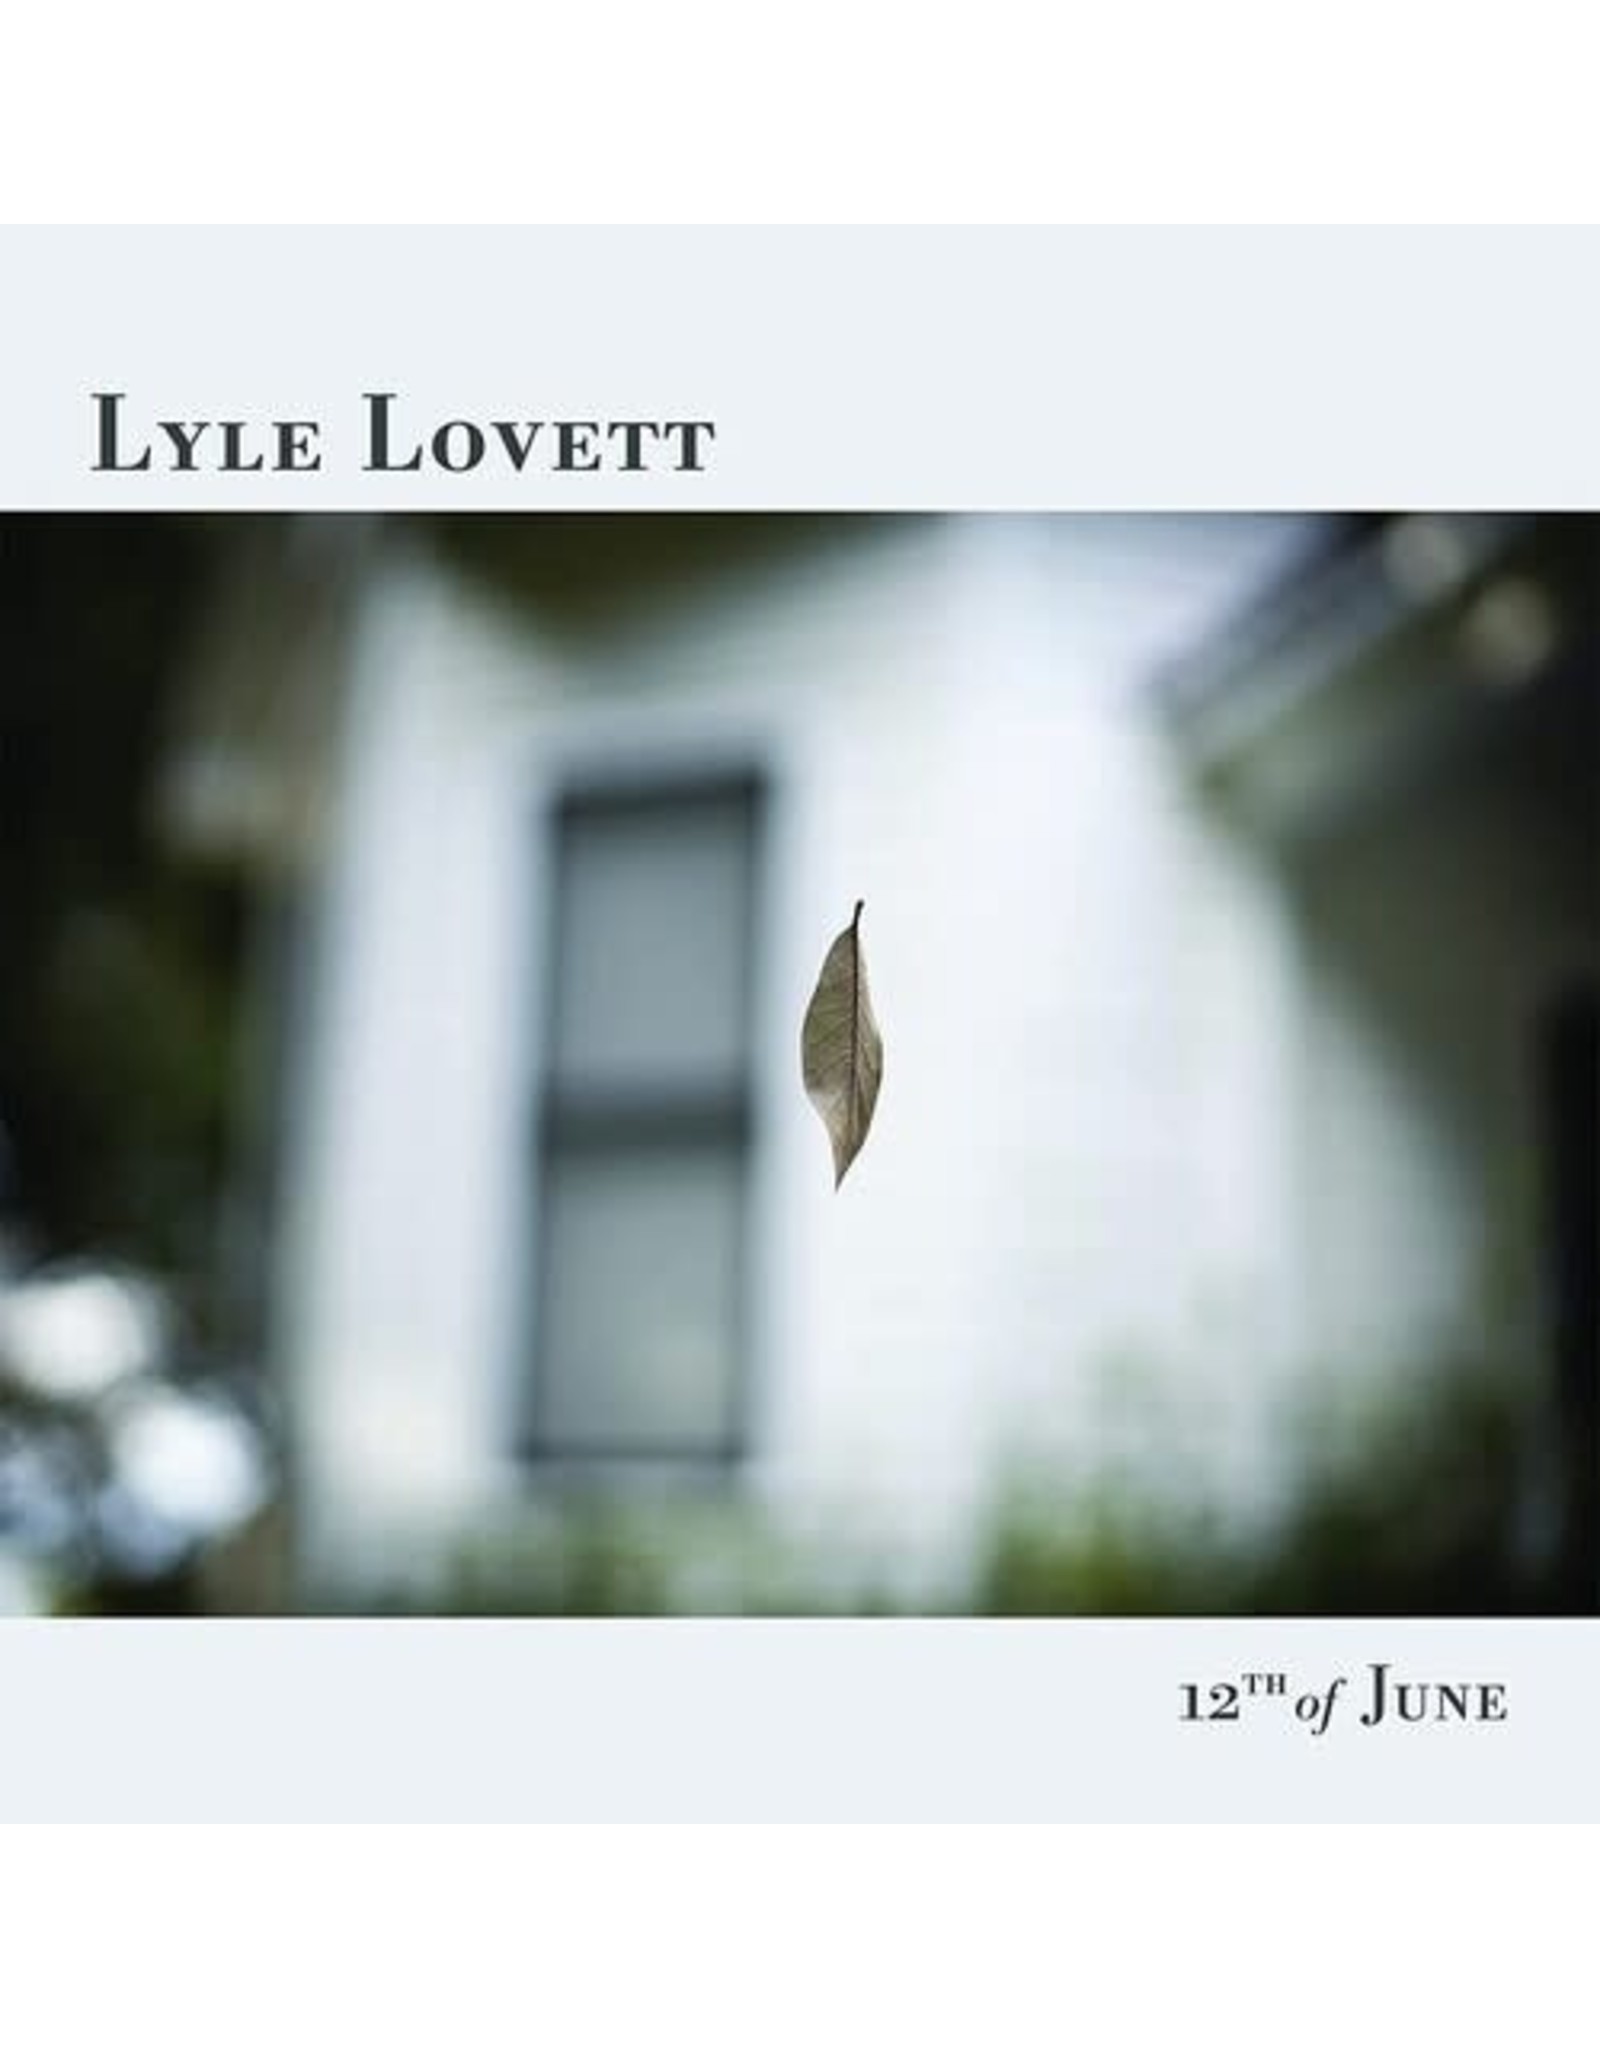 New Vinyl Lyle Lovett - 12th Of June LP